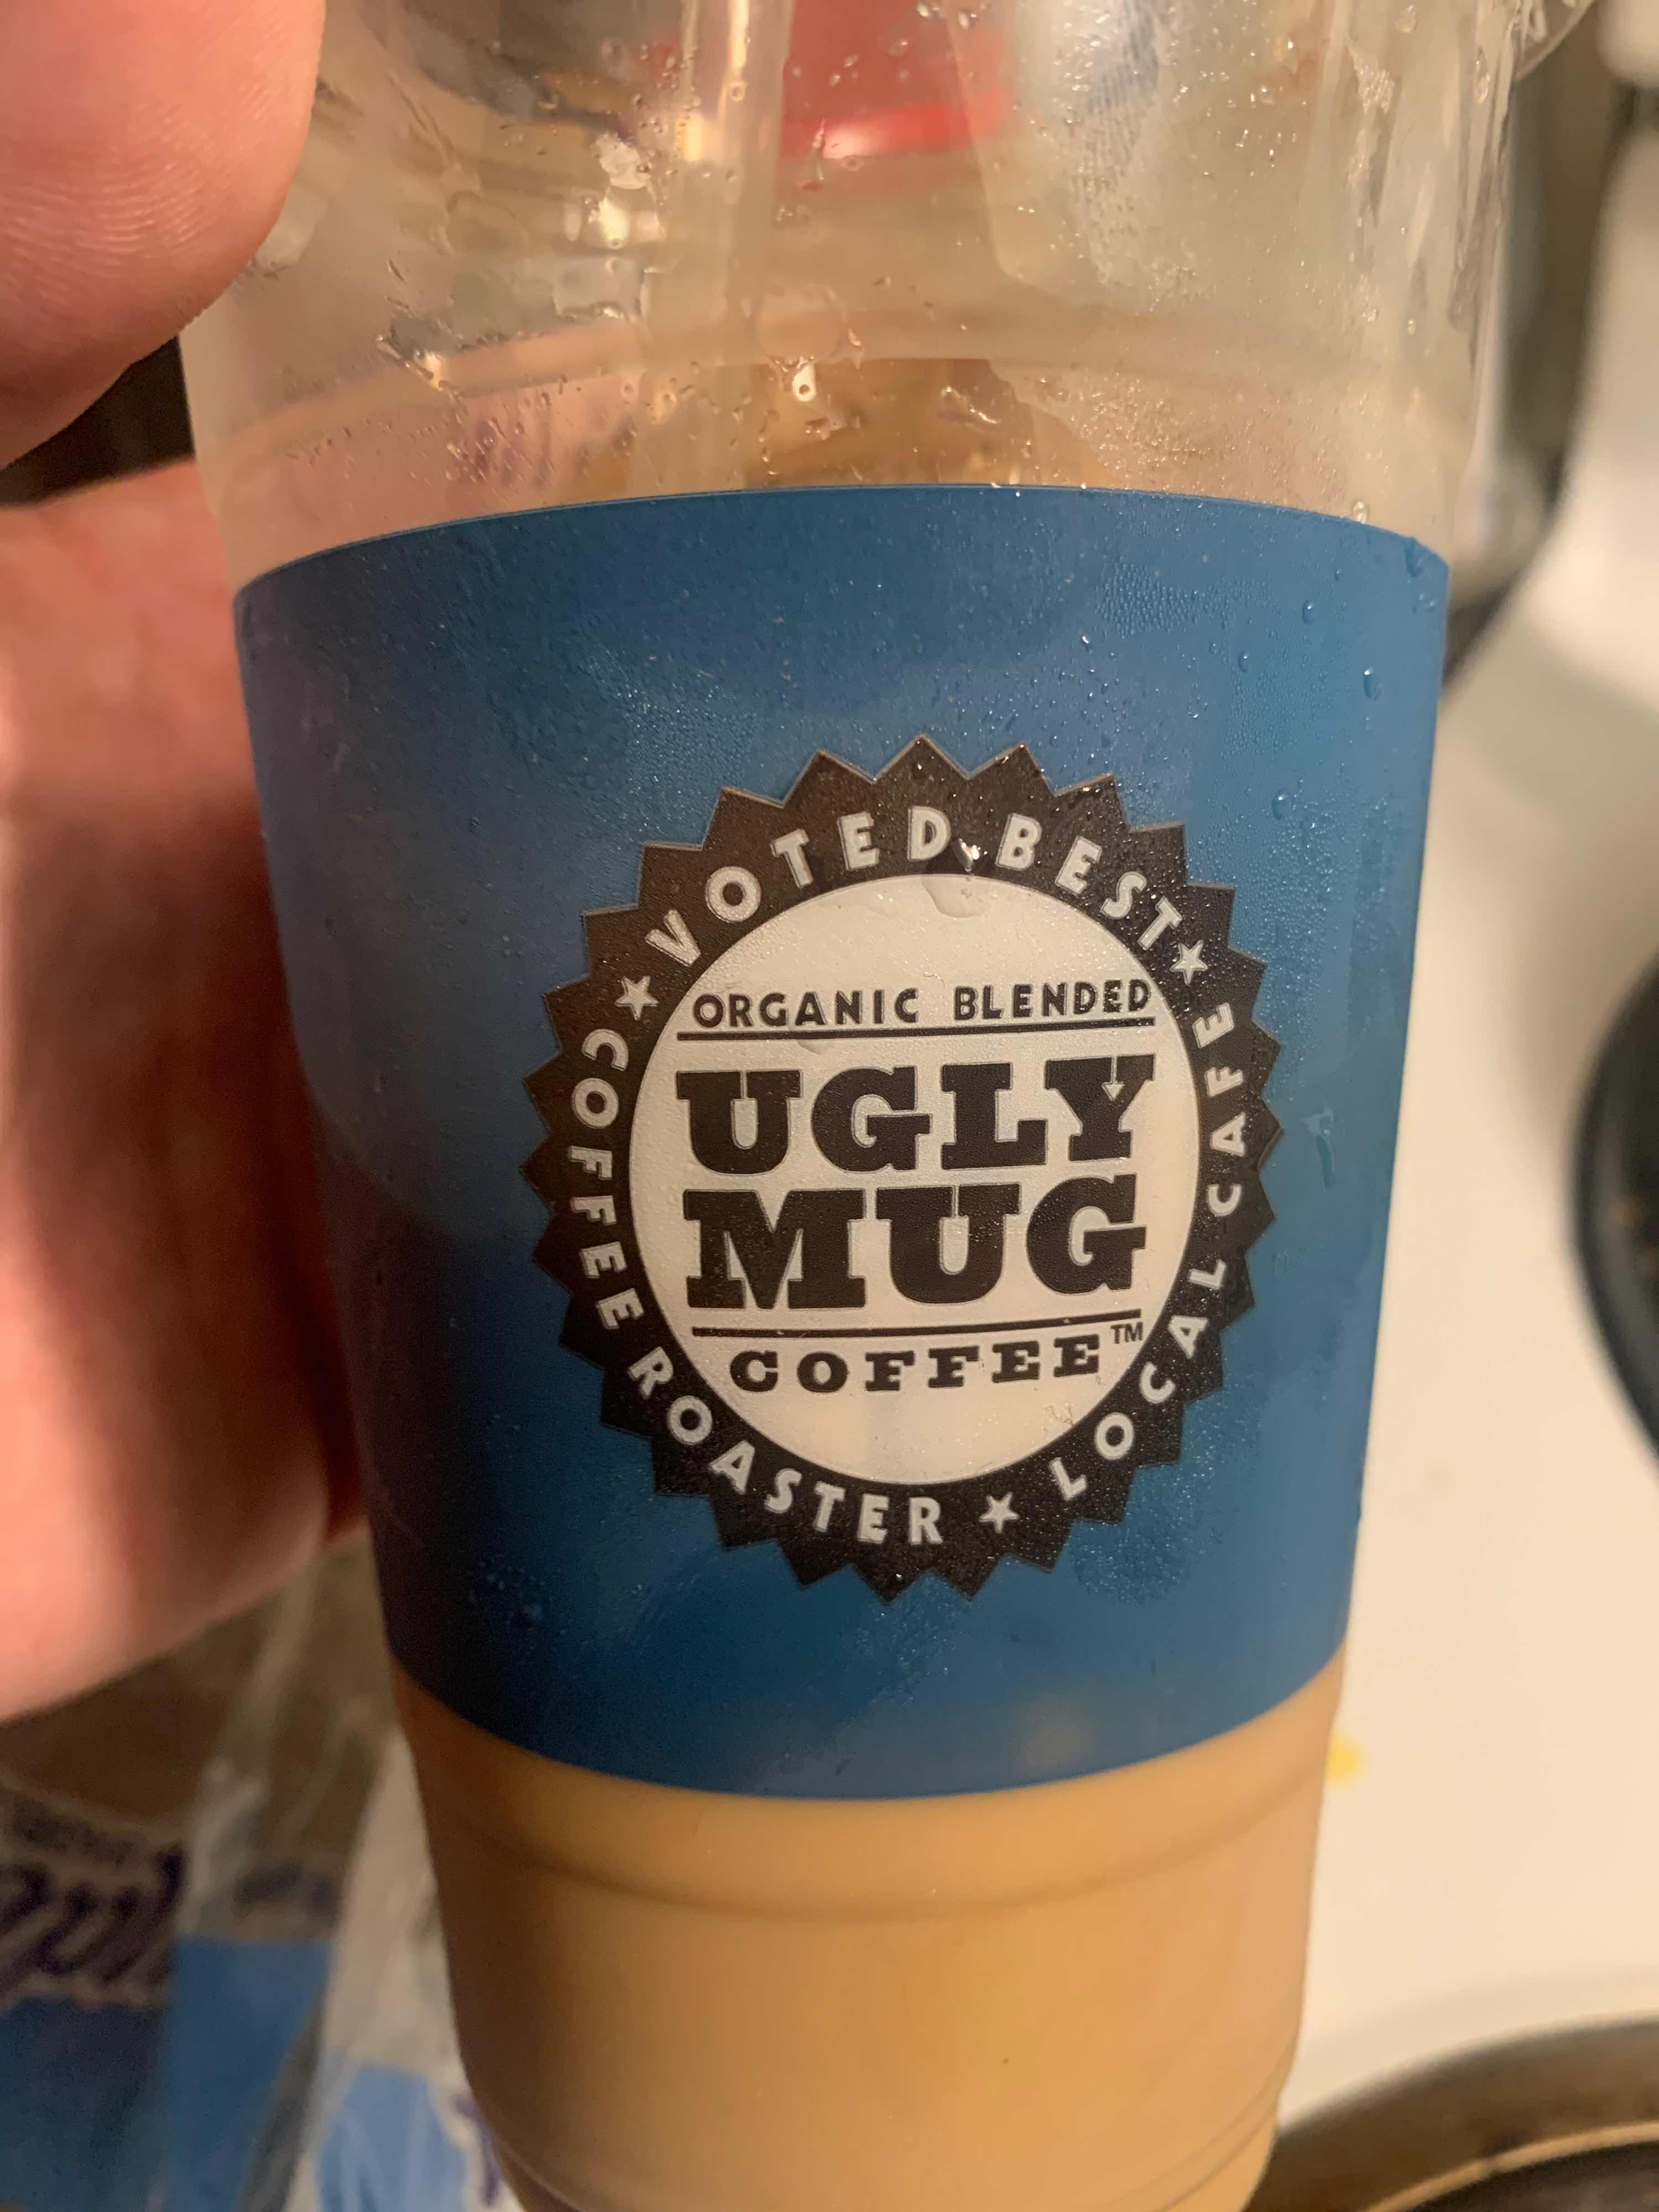 Ugly Mug Cafe & Coffee Roasters